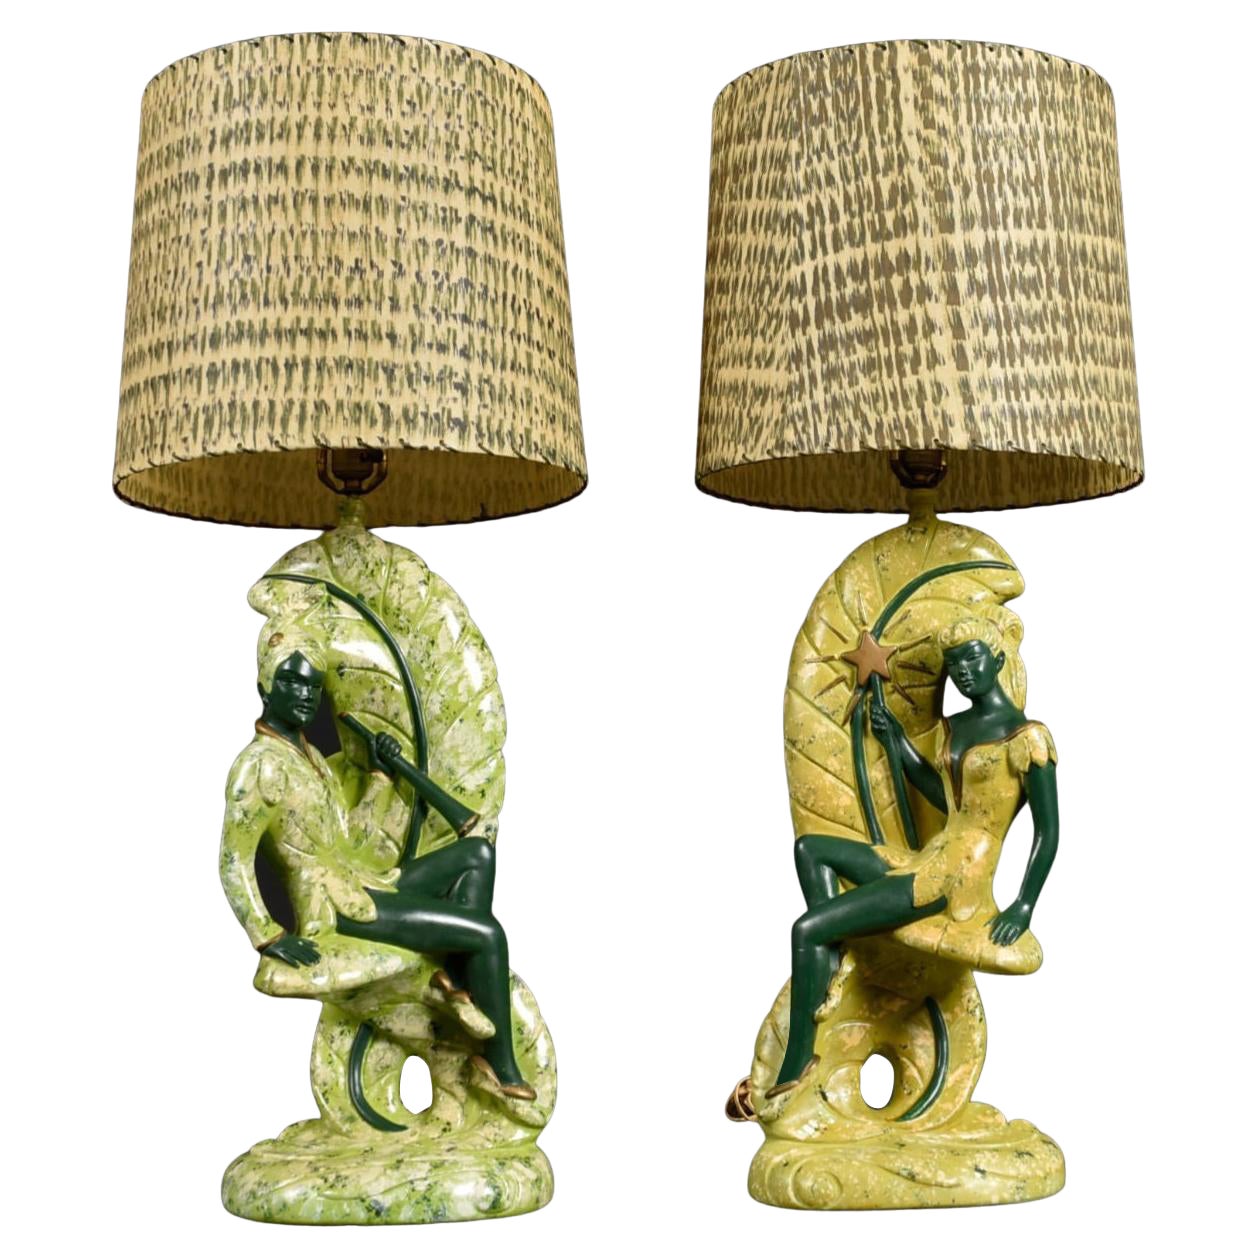 Continental Art Co. Grüne Fairy Chalkware-Lampen mit Glasfaserschirmen aus Fairy Chalkware